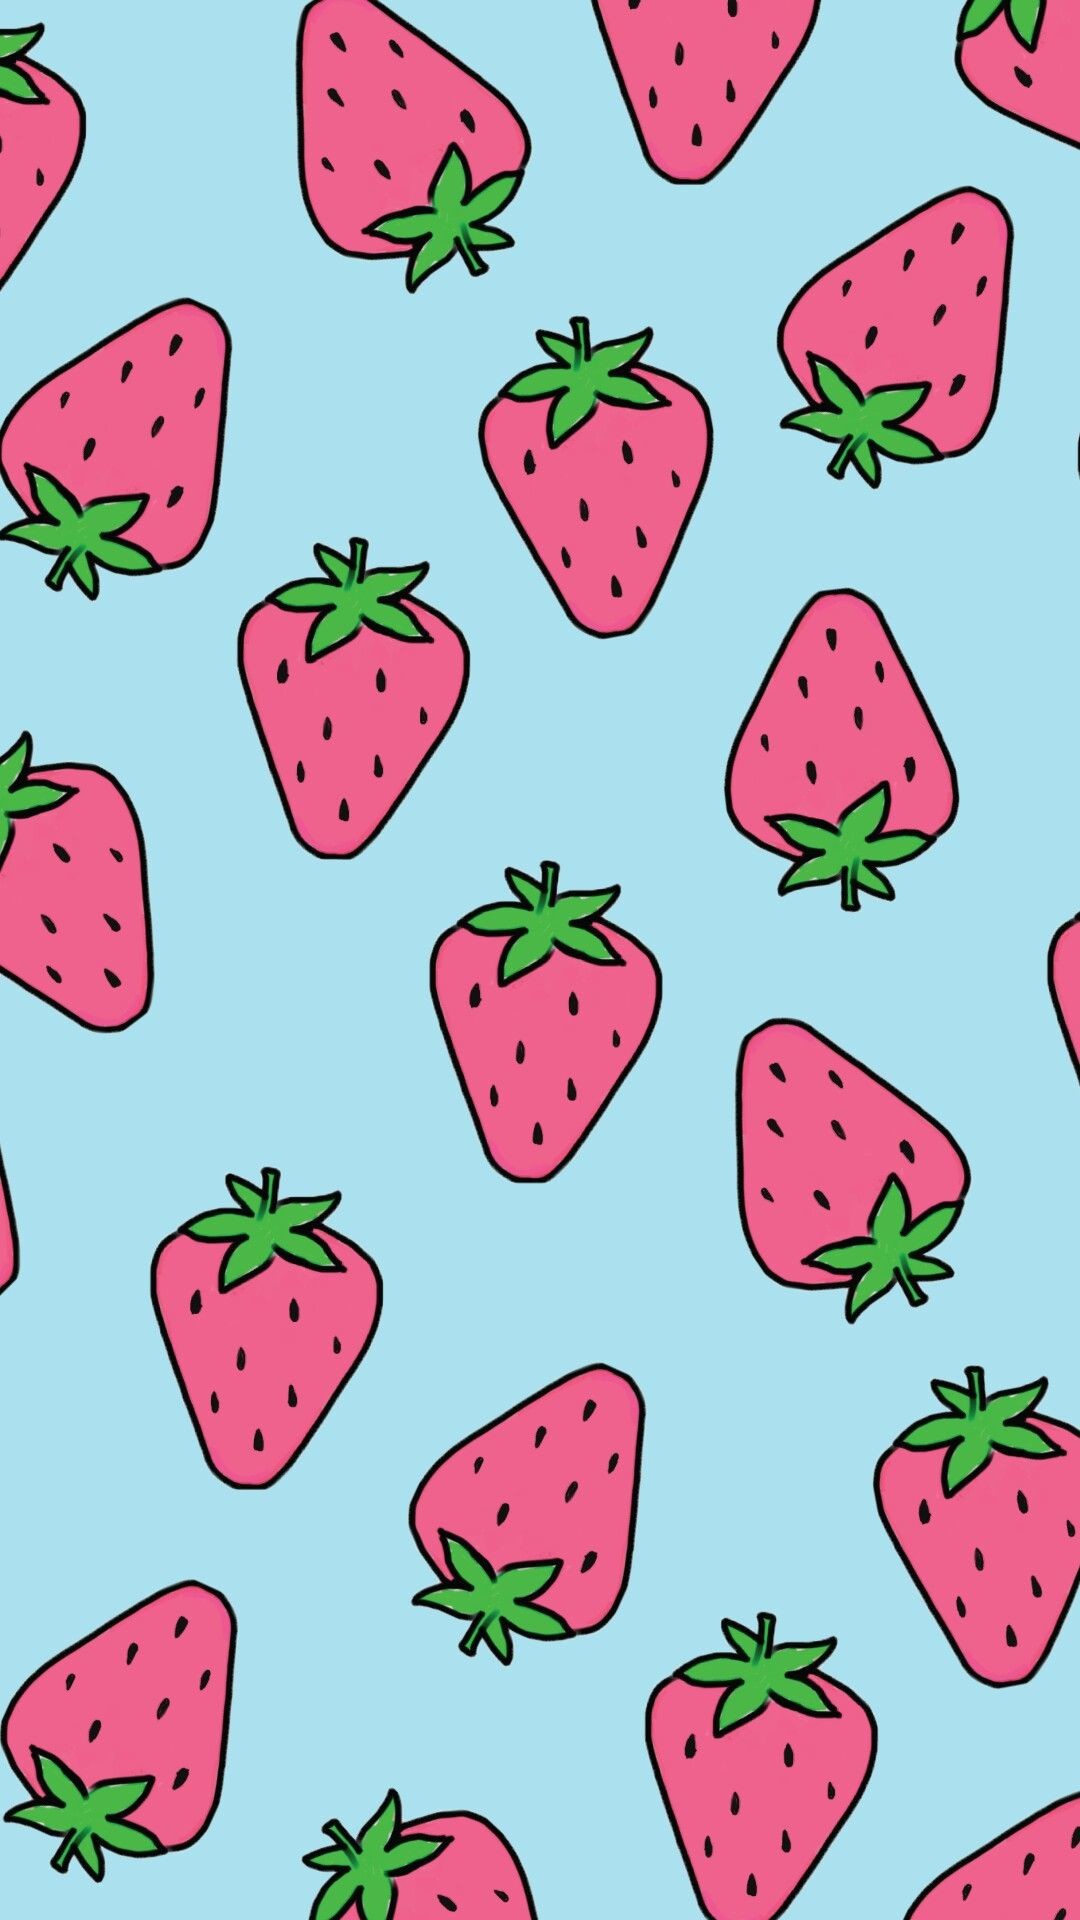 귀여운 딸기 벽지,딸기,분홍,무늬,과일,수박